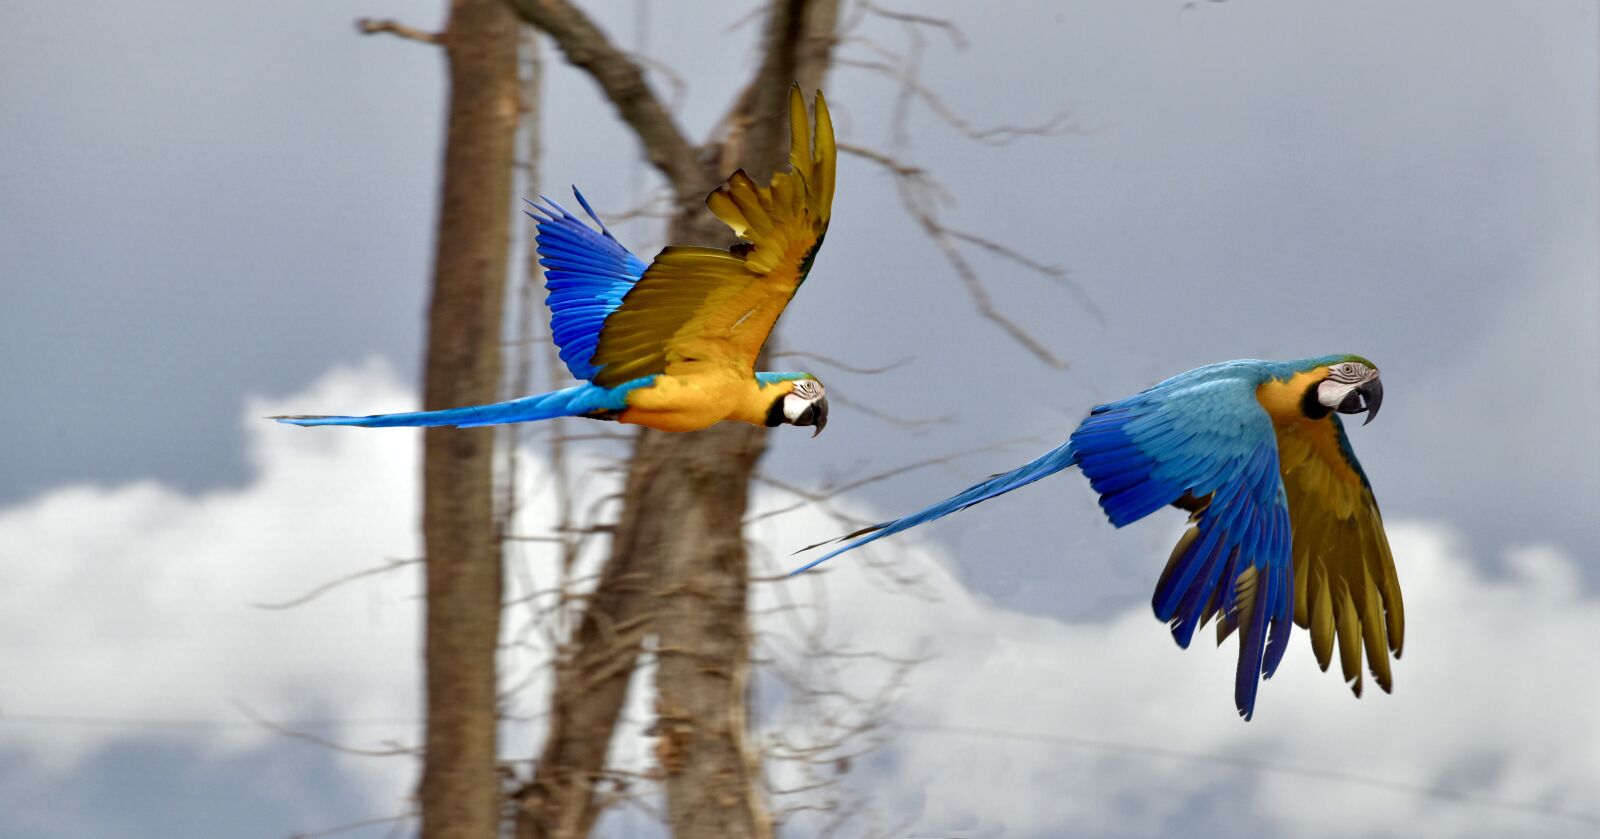 Nikon D810 sample photo. "Parrot, bird, exotic" photography